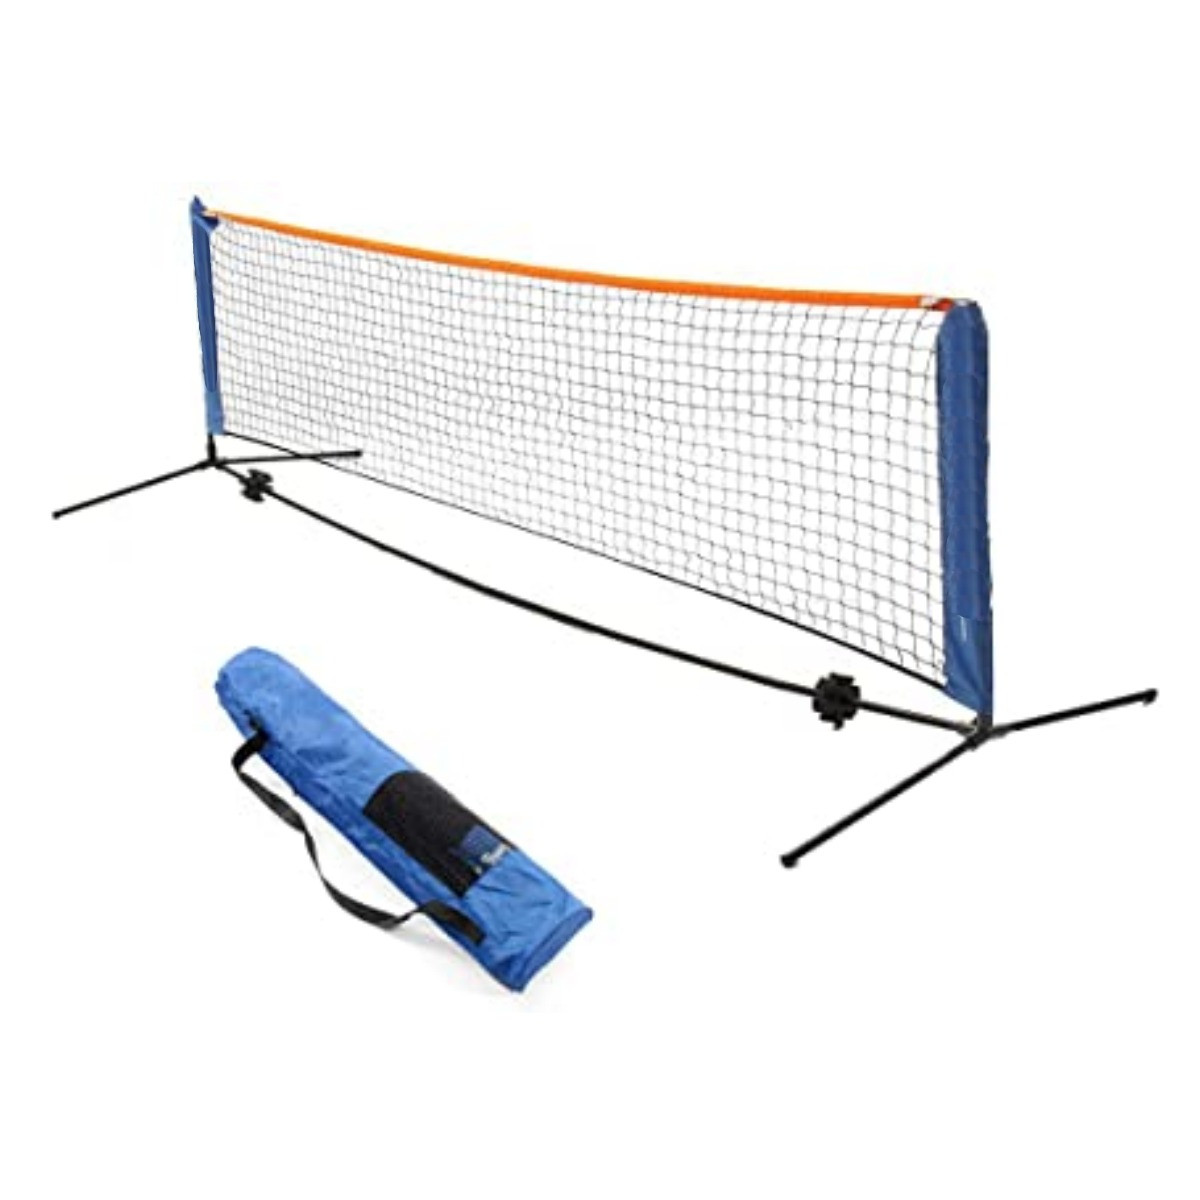 Reti da badminton, rete da pallavolo portatile pieghevole da esterno 6 m,  set da badminton con